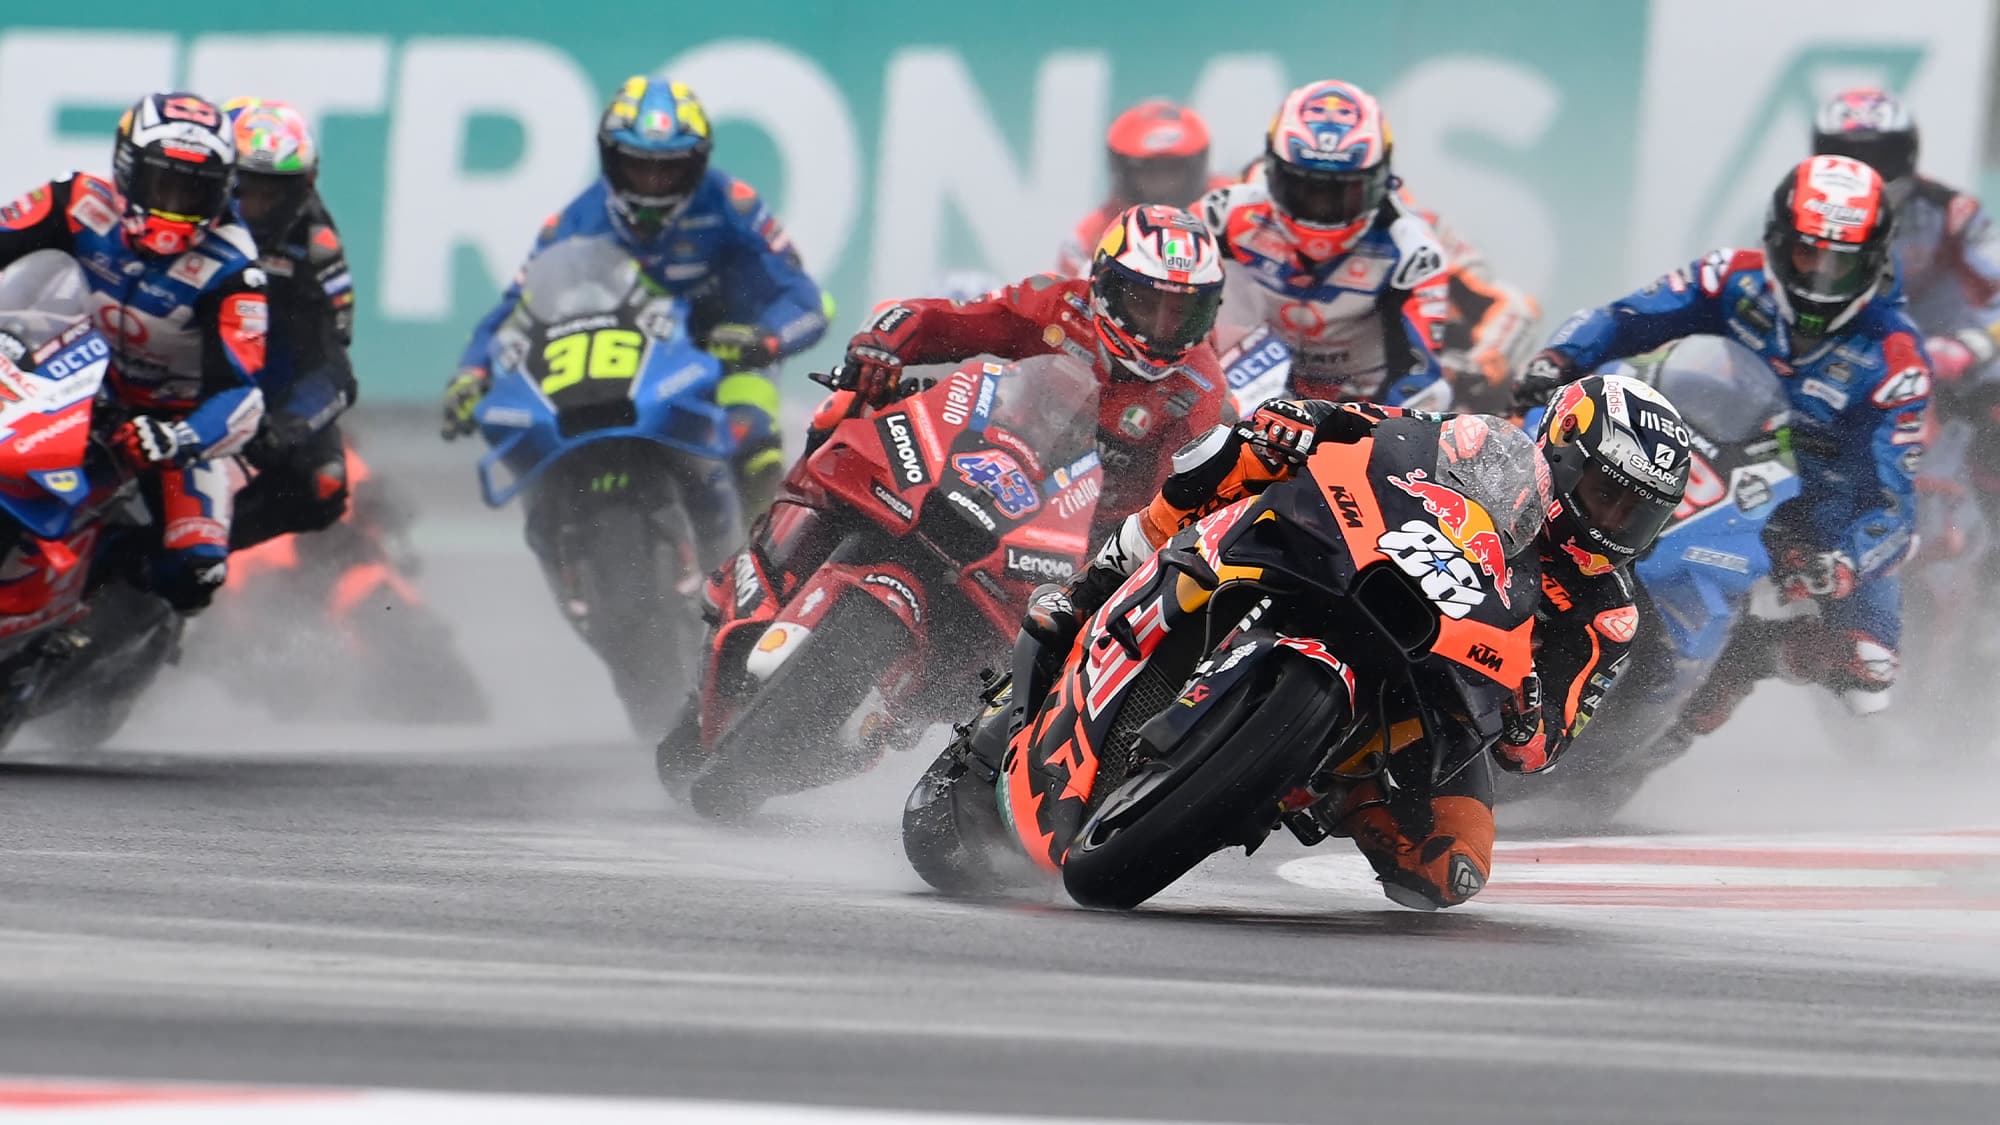 2022 MotoGP Indonesian GP praise be to the Mandalika monsoon!